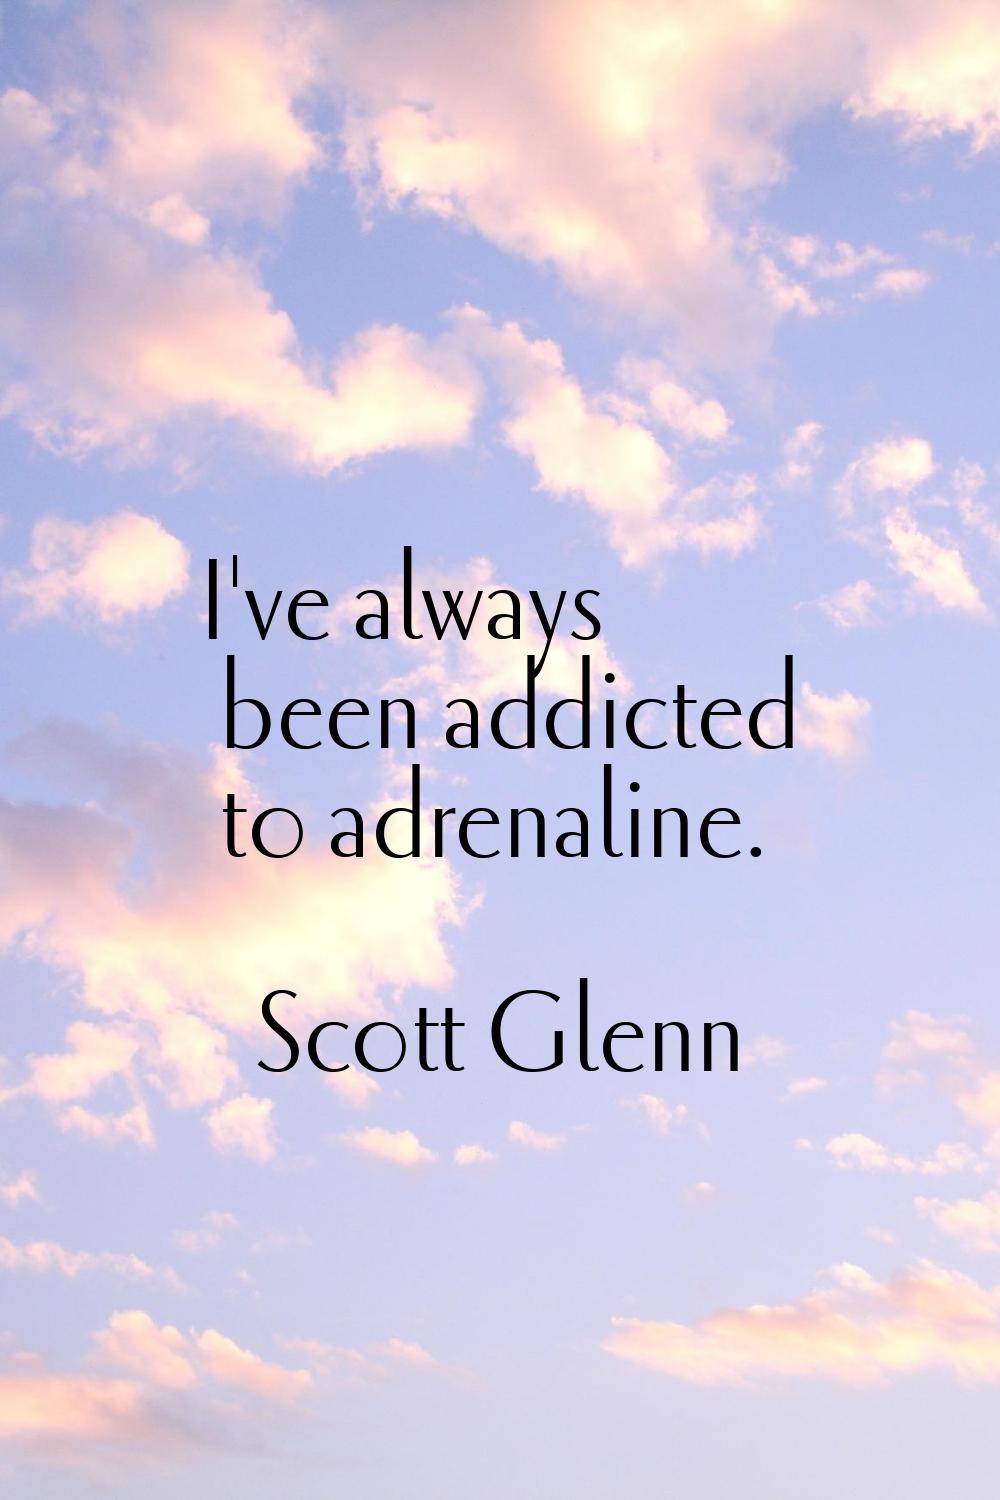 I've always been addicted to adrenaline.